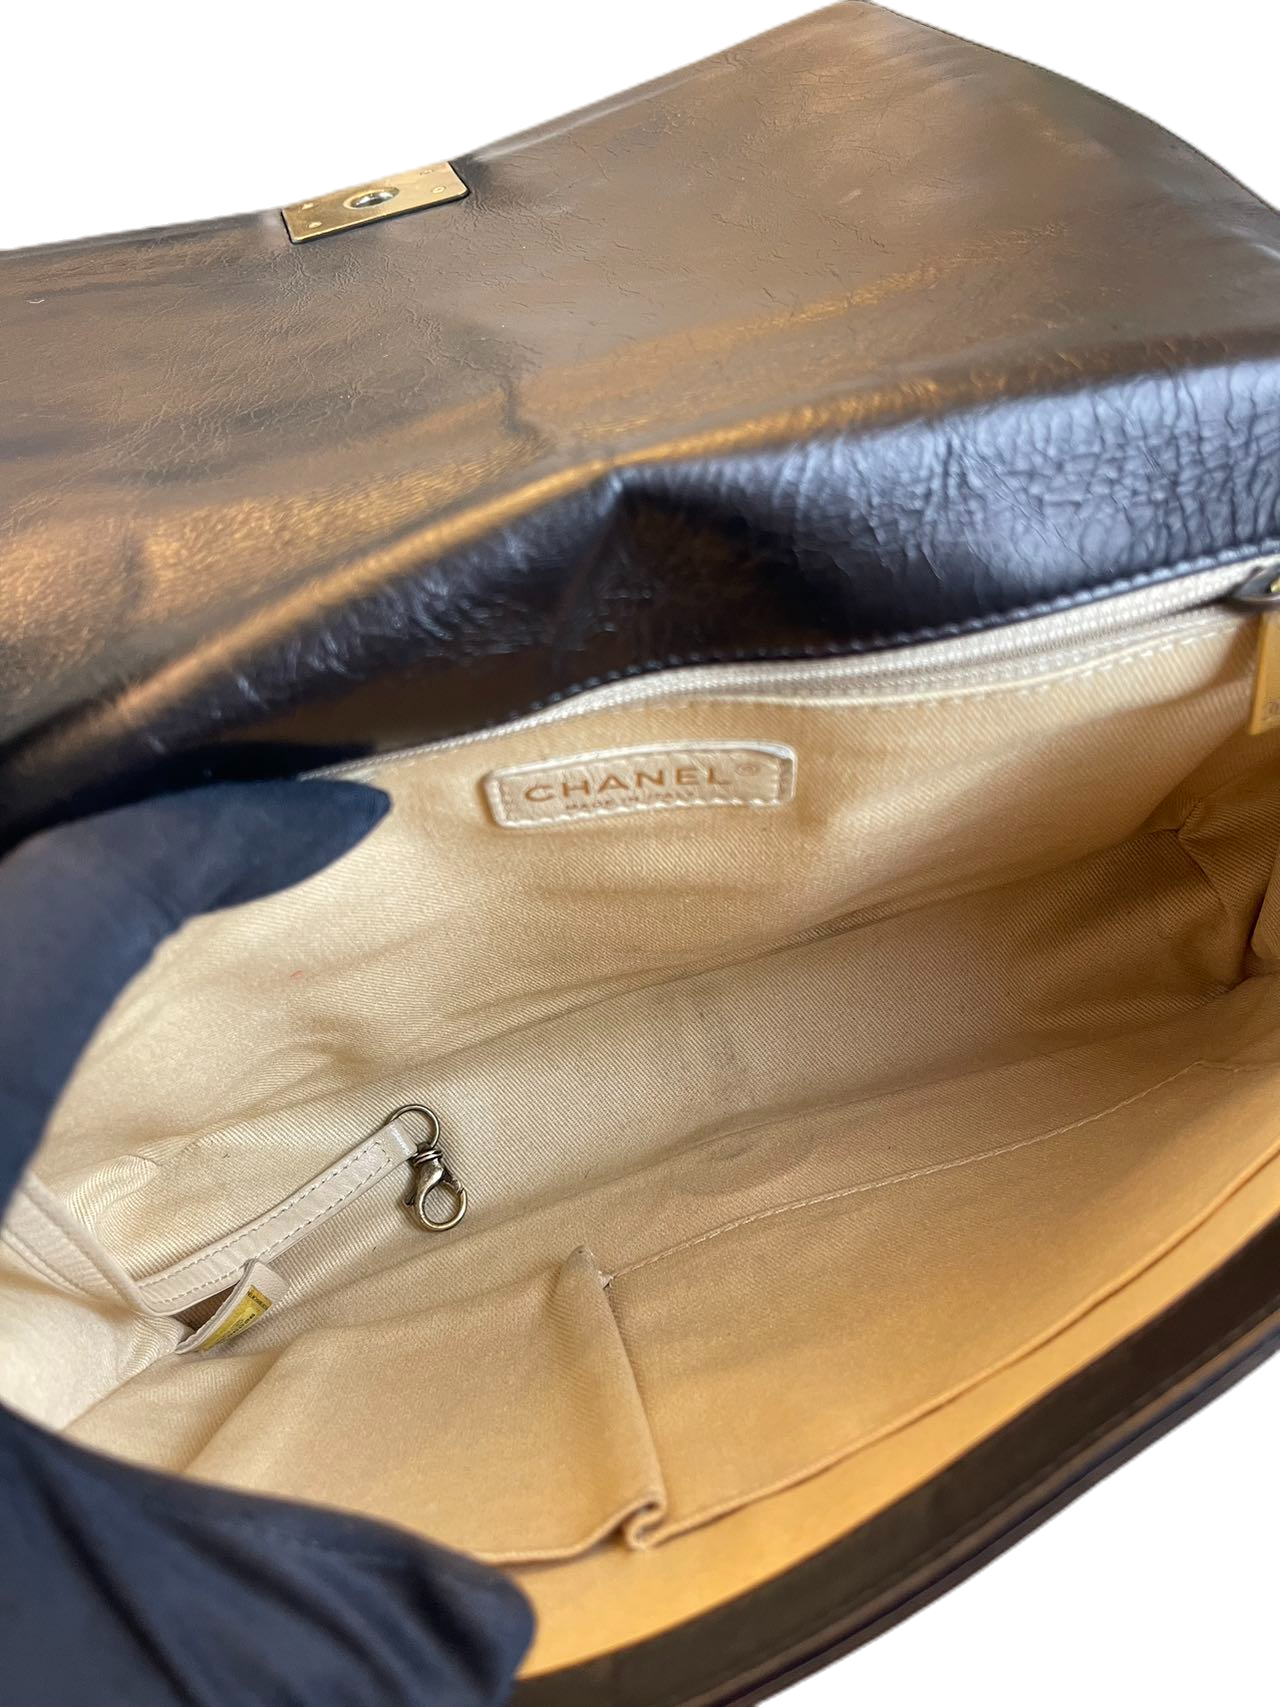 Preloved Chanel Black Lambskin XL Boy Bag Shoulder Bag